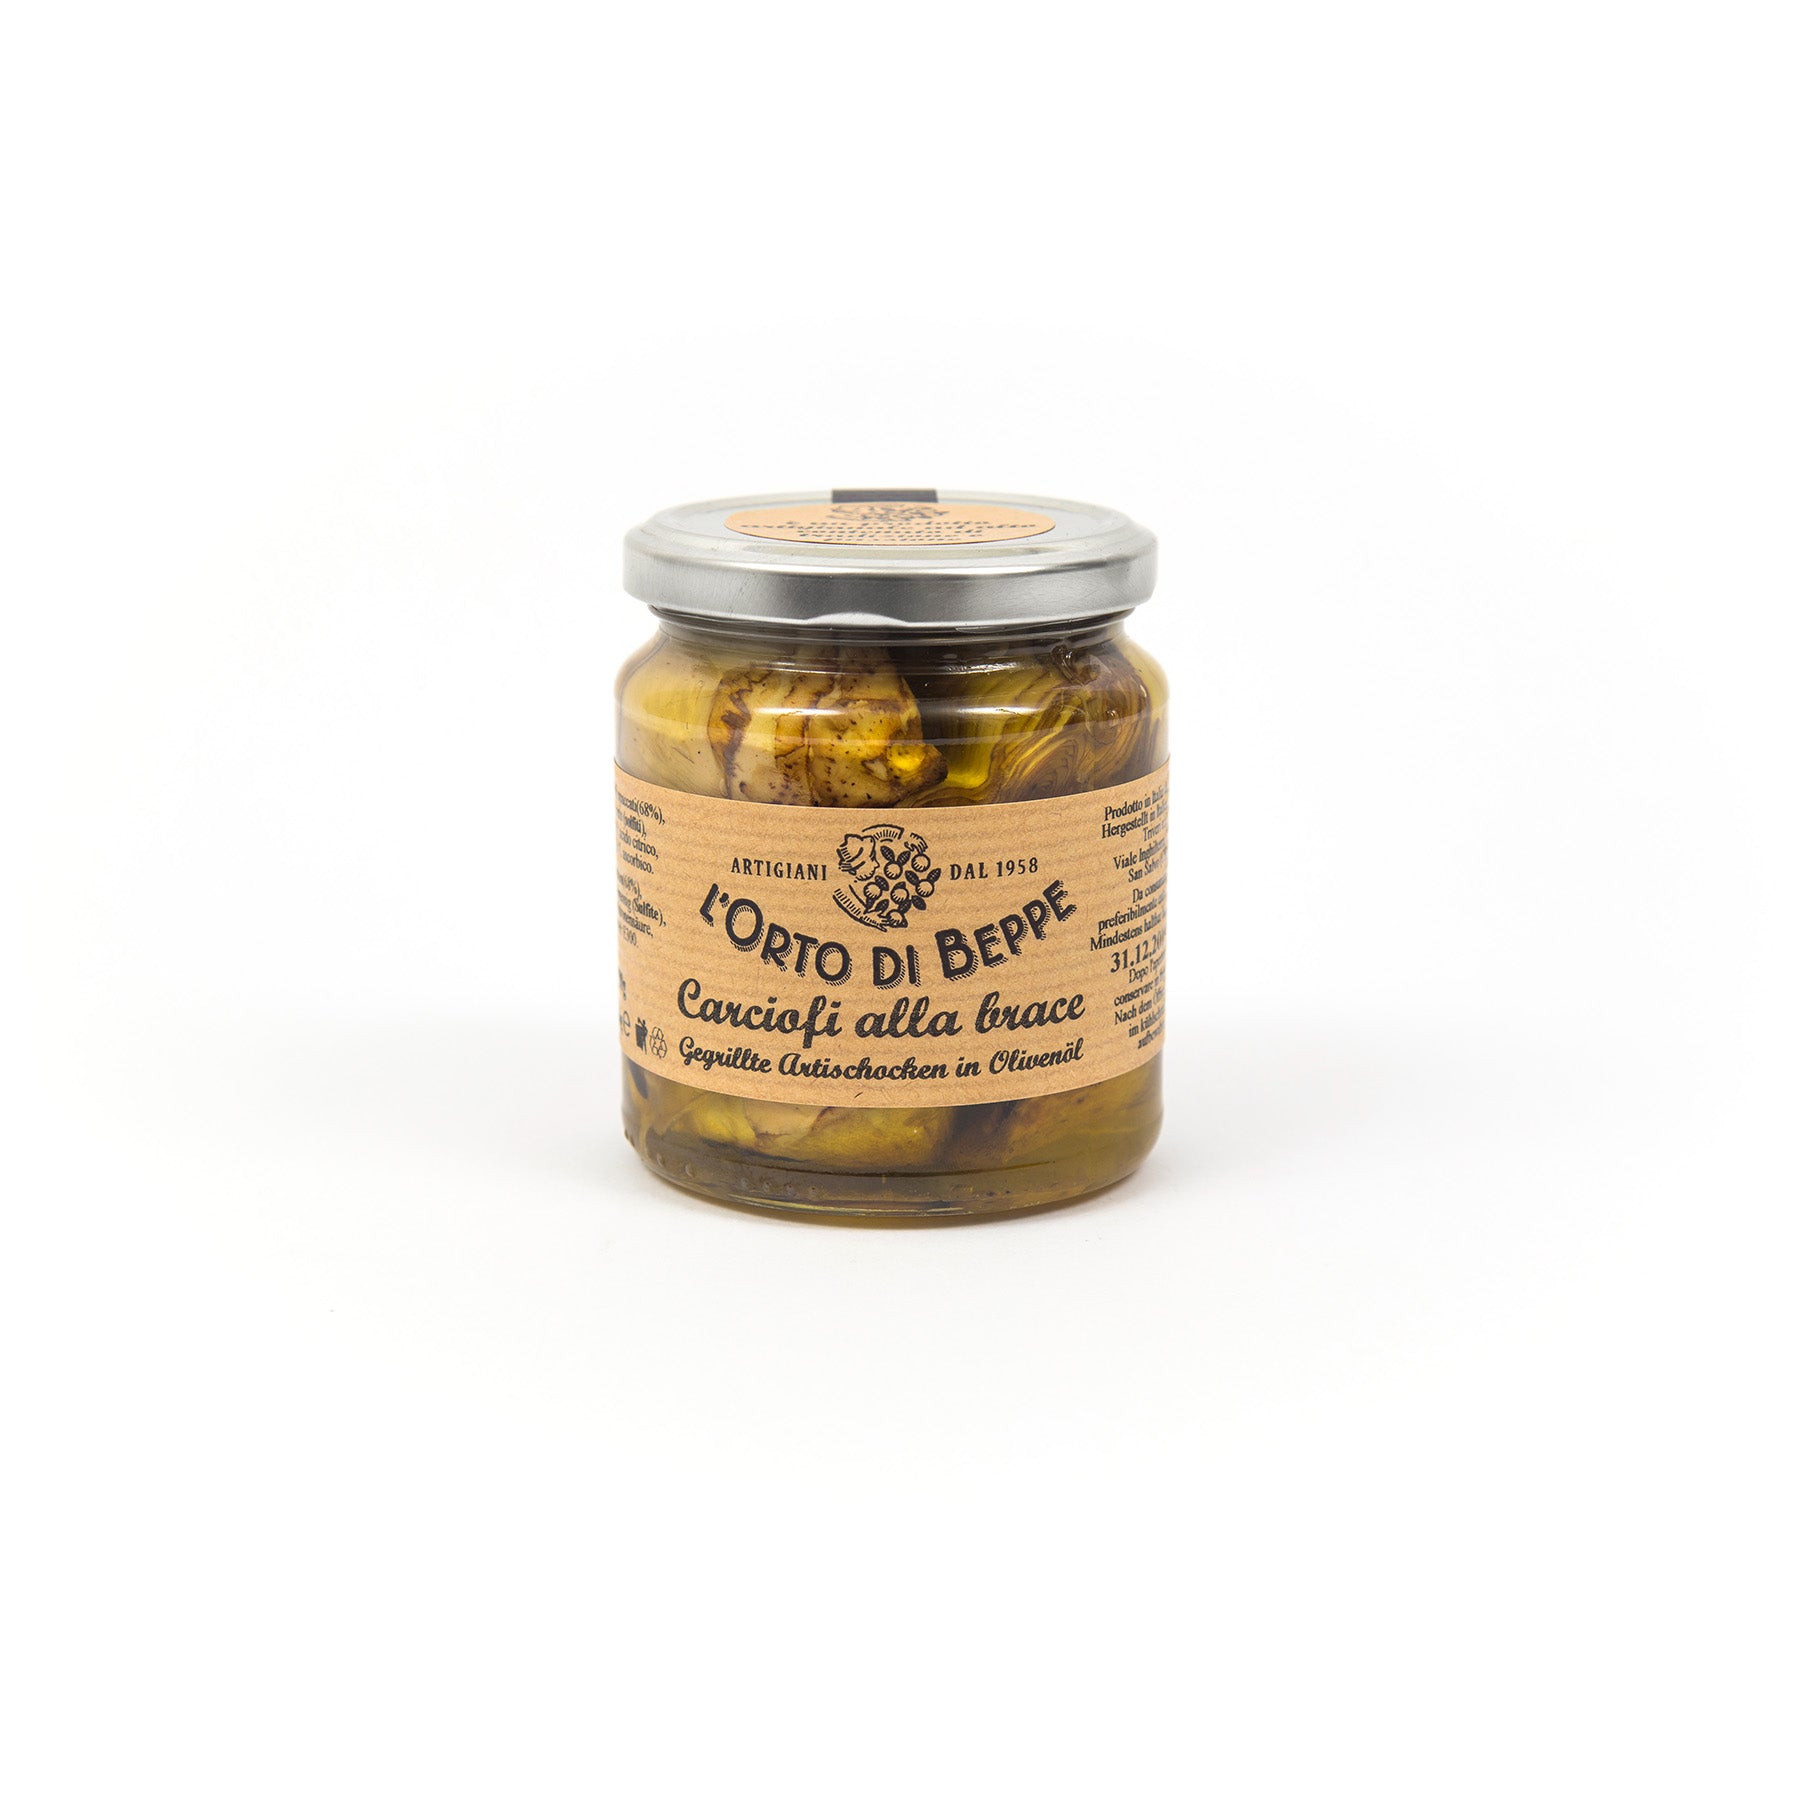 Artischockenherzen gegrillt in Olivenöl